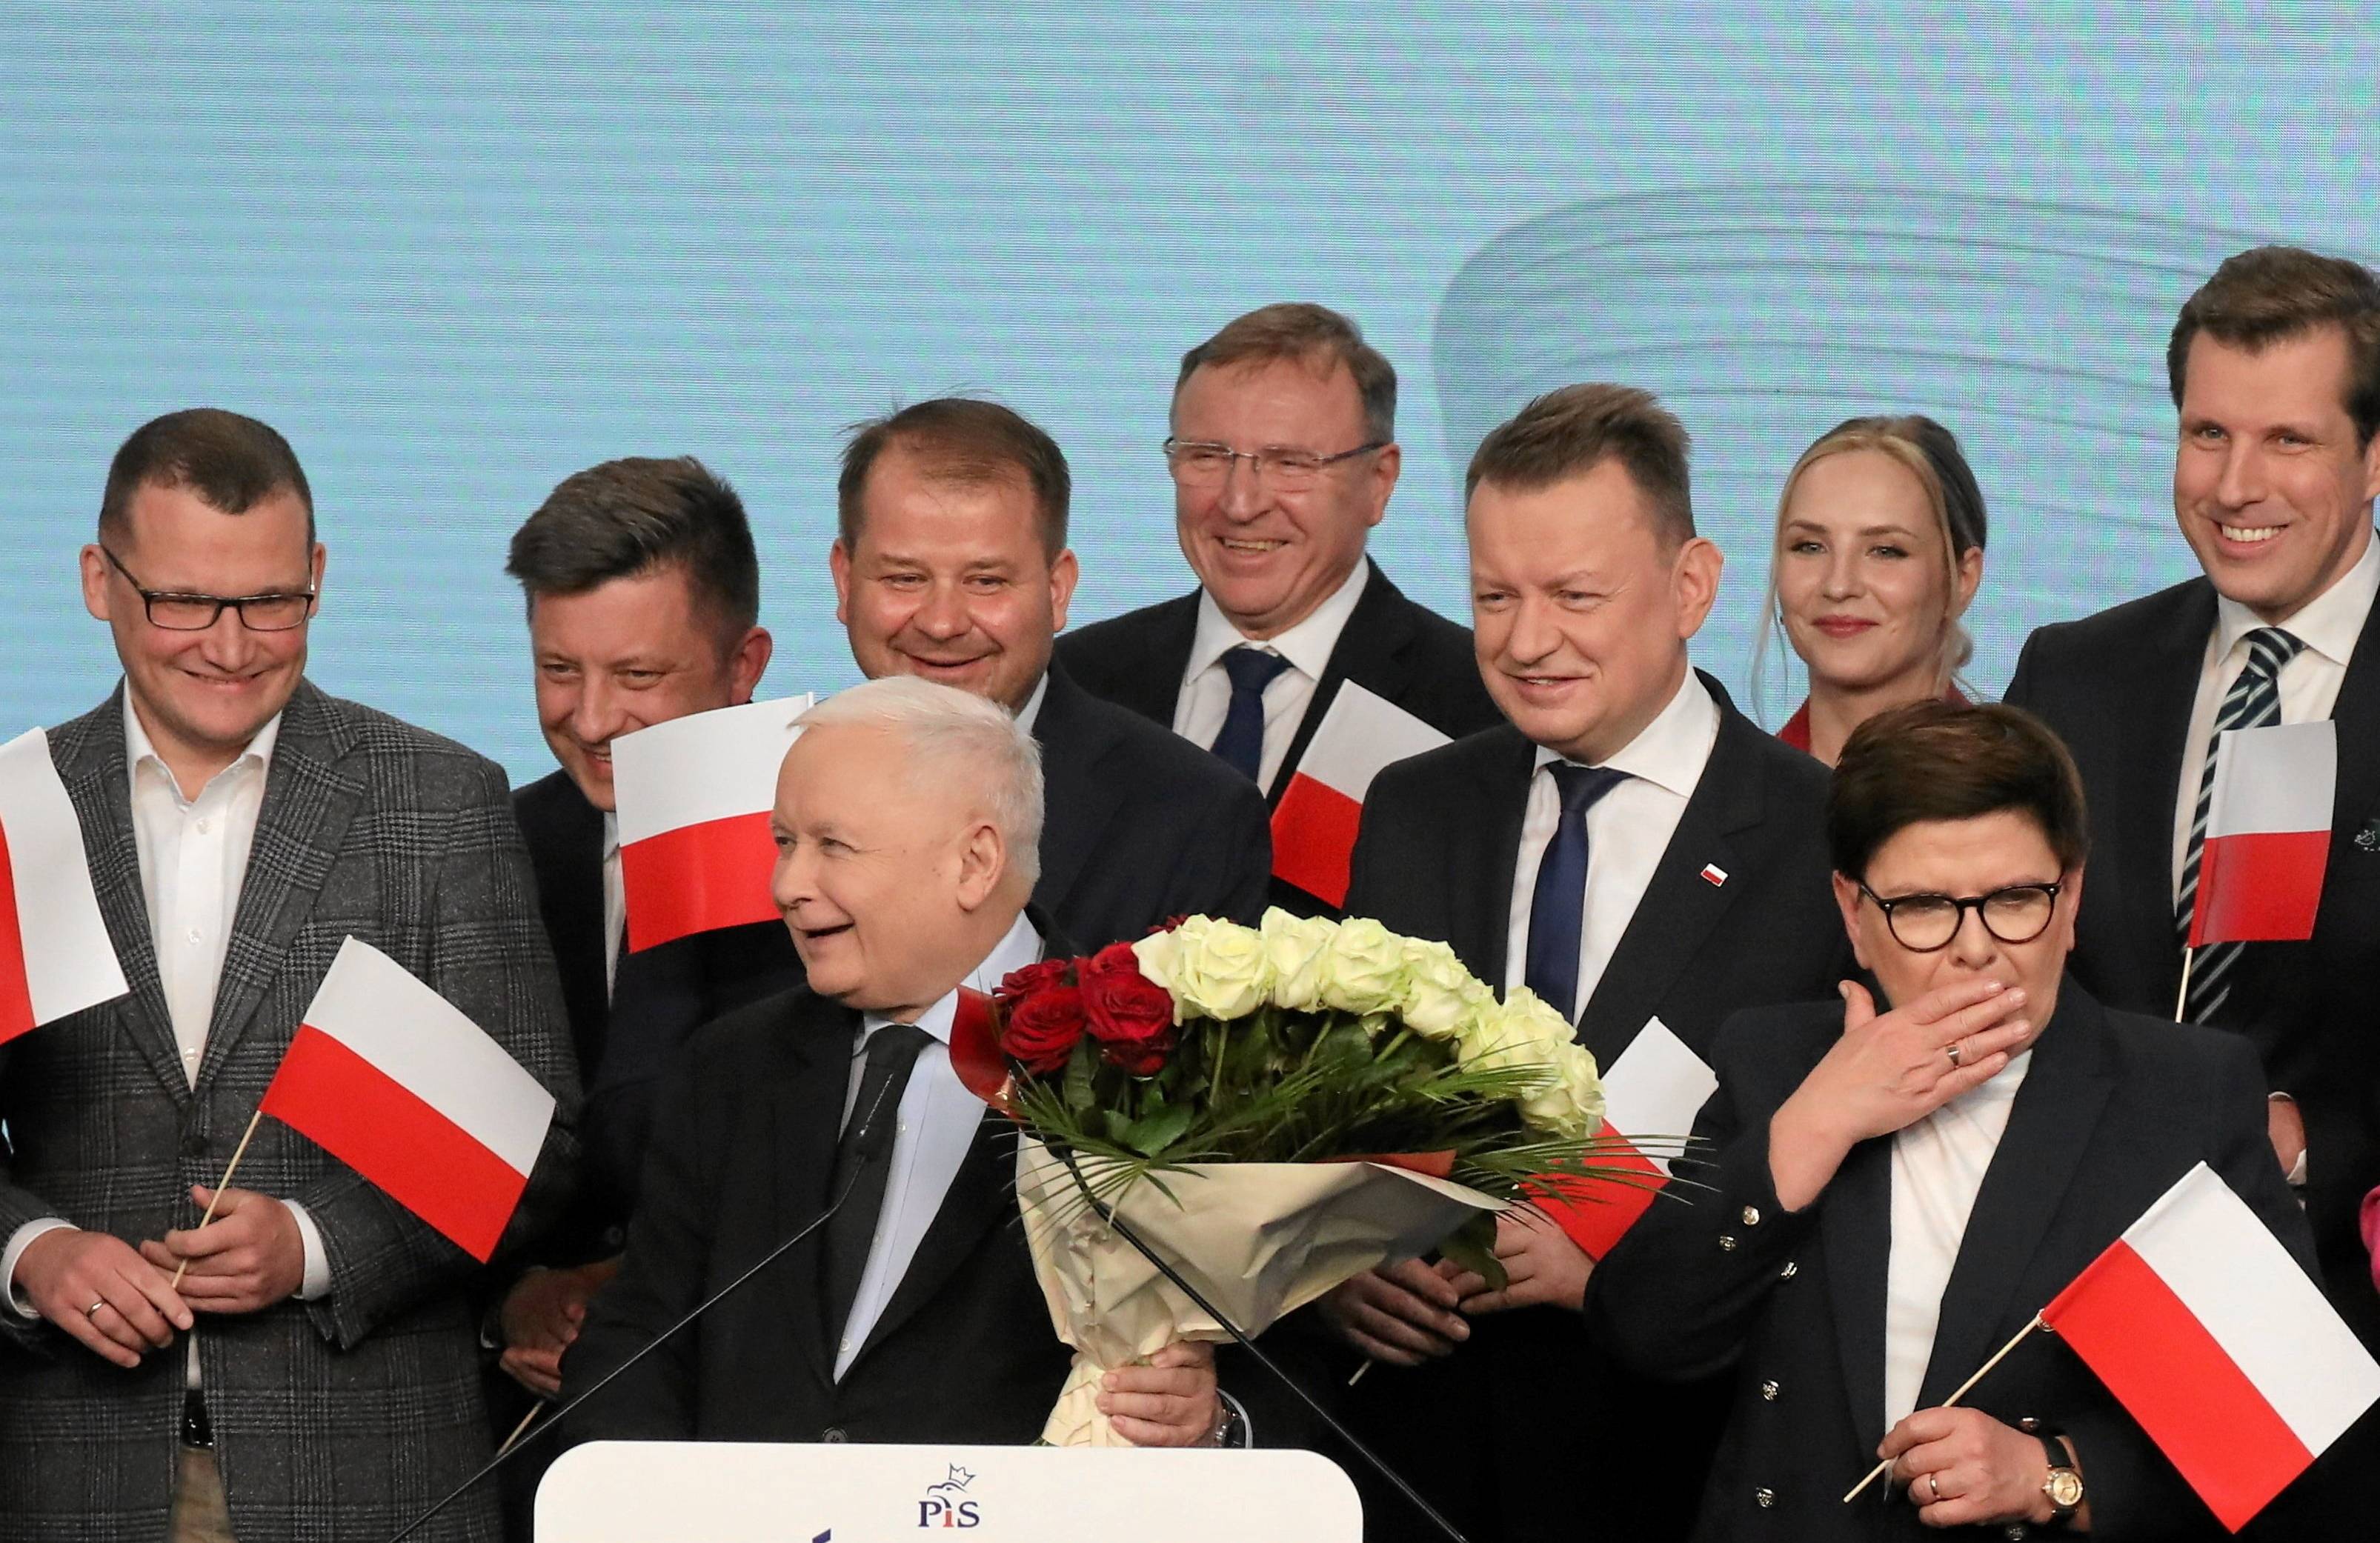 Rozradowany Jarosław Kaczyński - niski siwy starszy pan - w otoczeiu mężczyzn z biało-czerwonymi flagami, z biało-czerwonym bukietem w dłoni